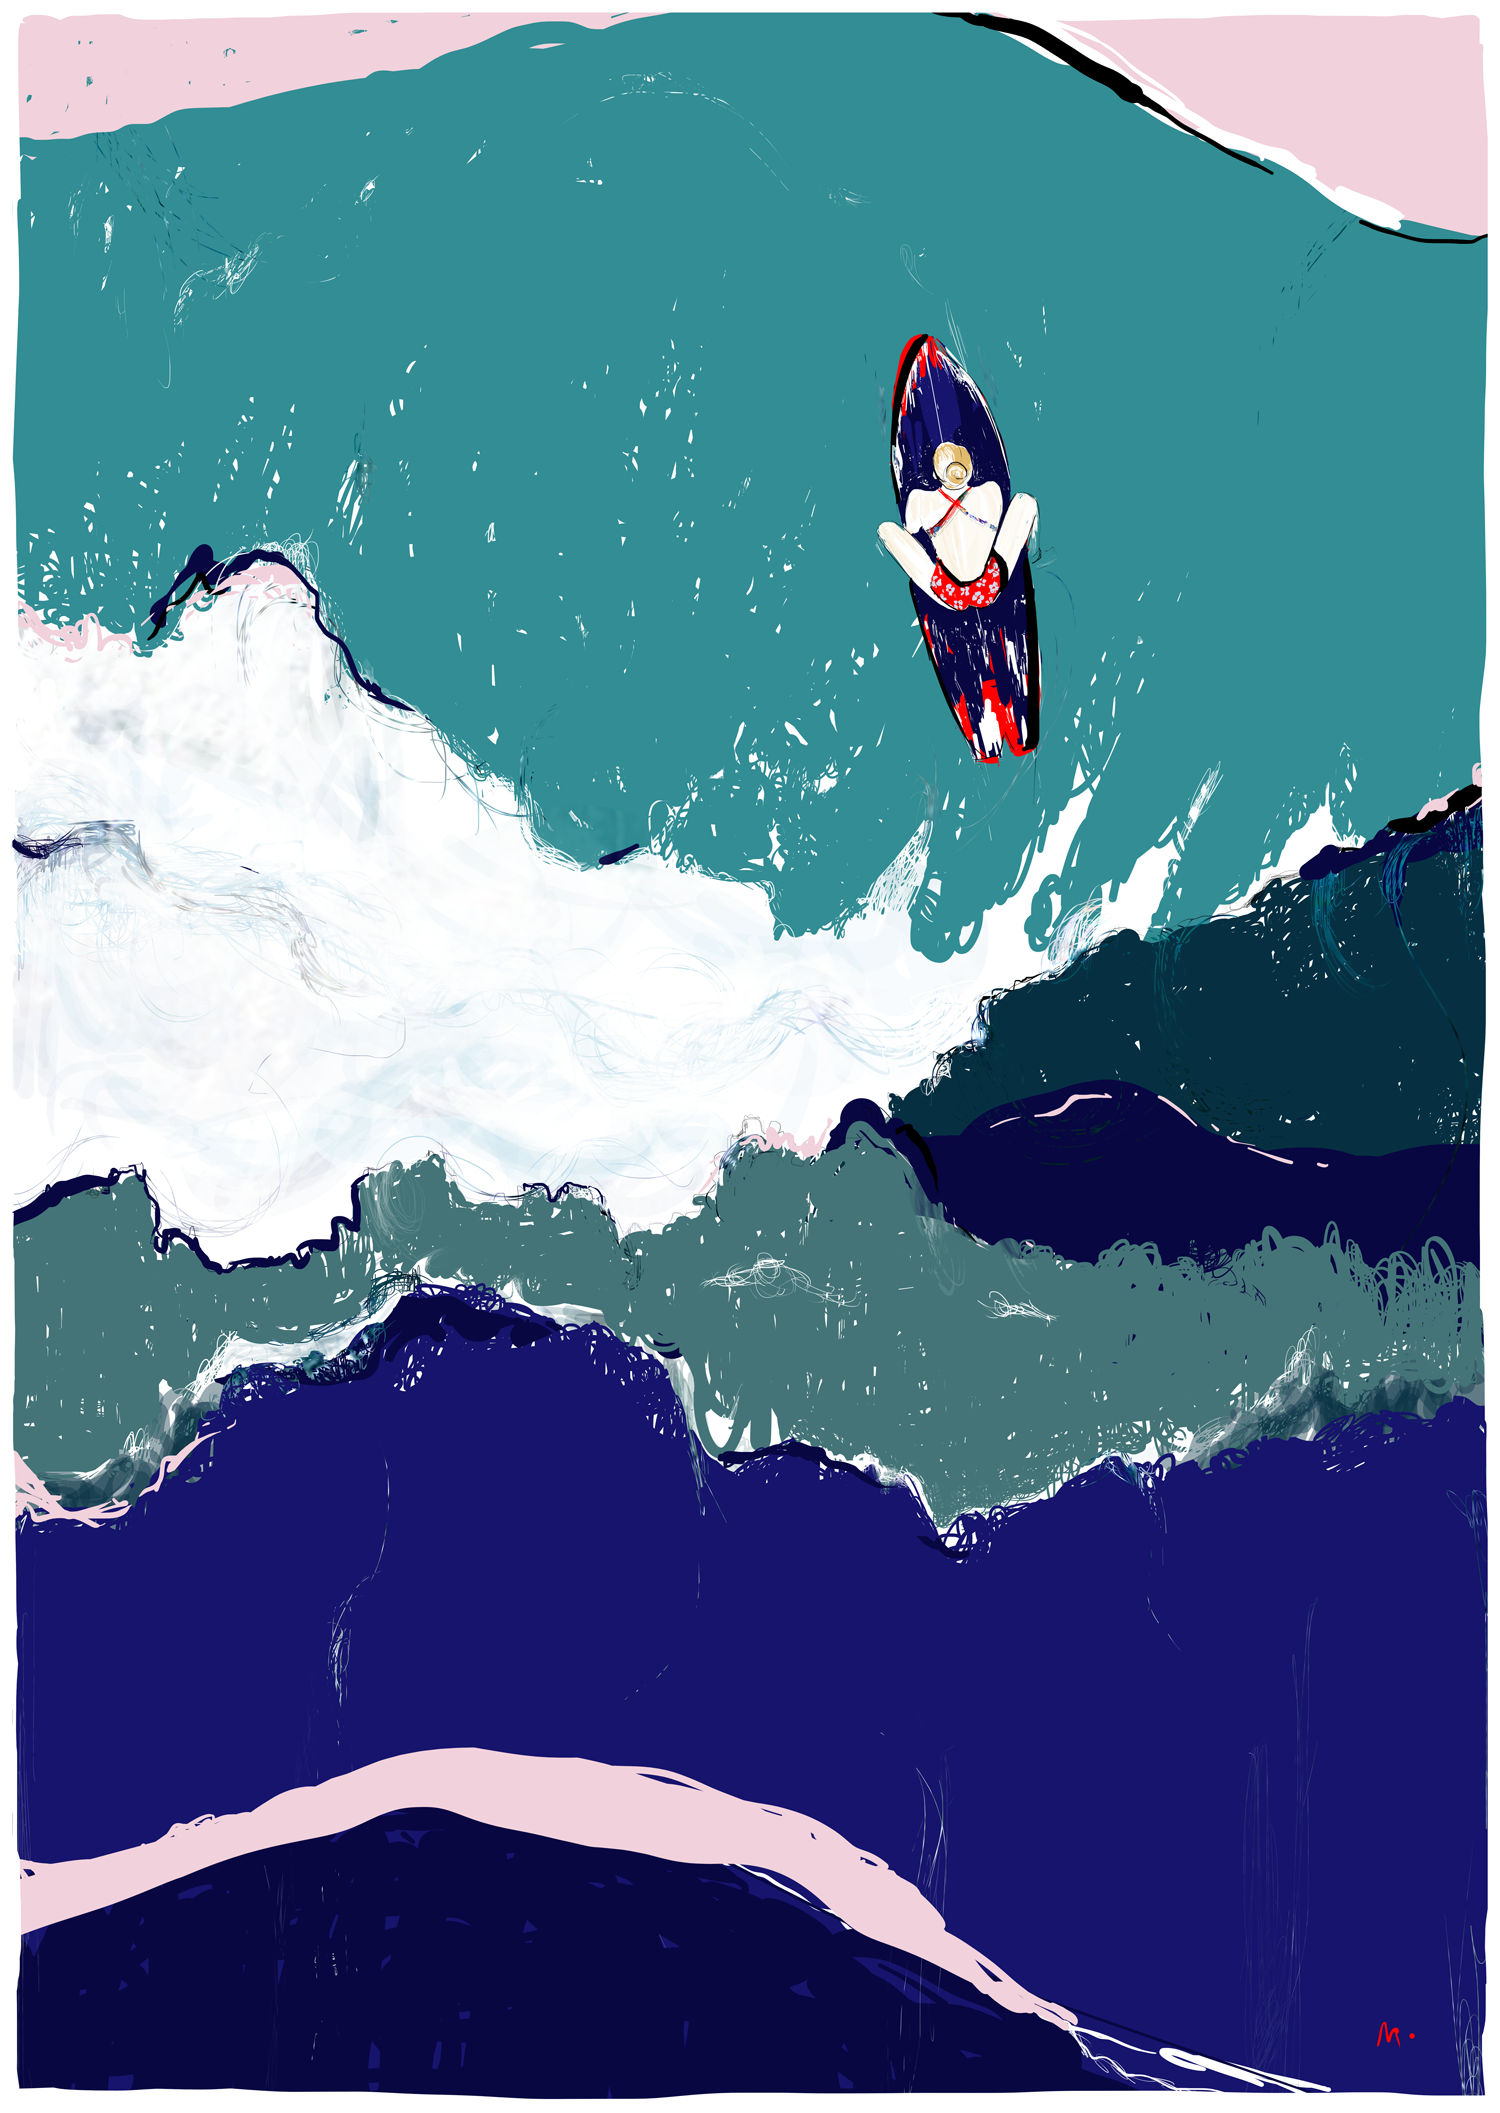 Illustration surfeuse par Margot Changeon - Thème aventure et surf